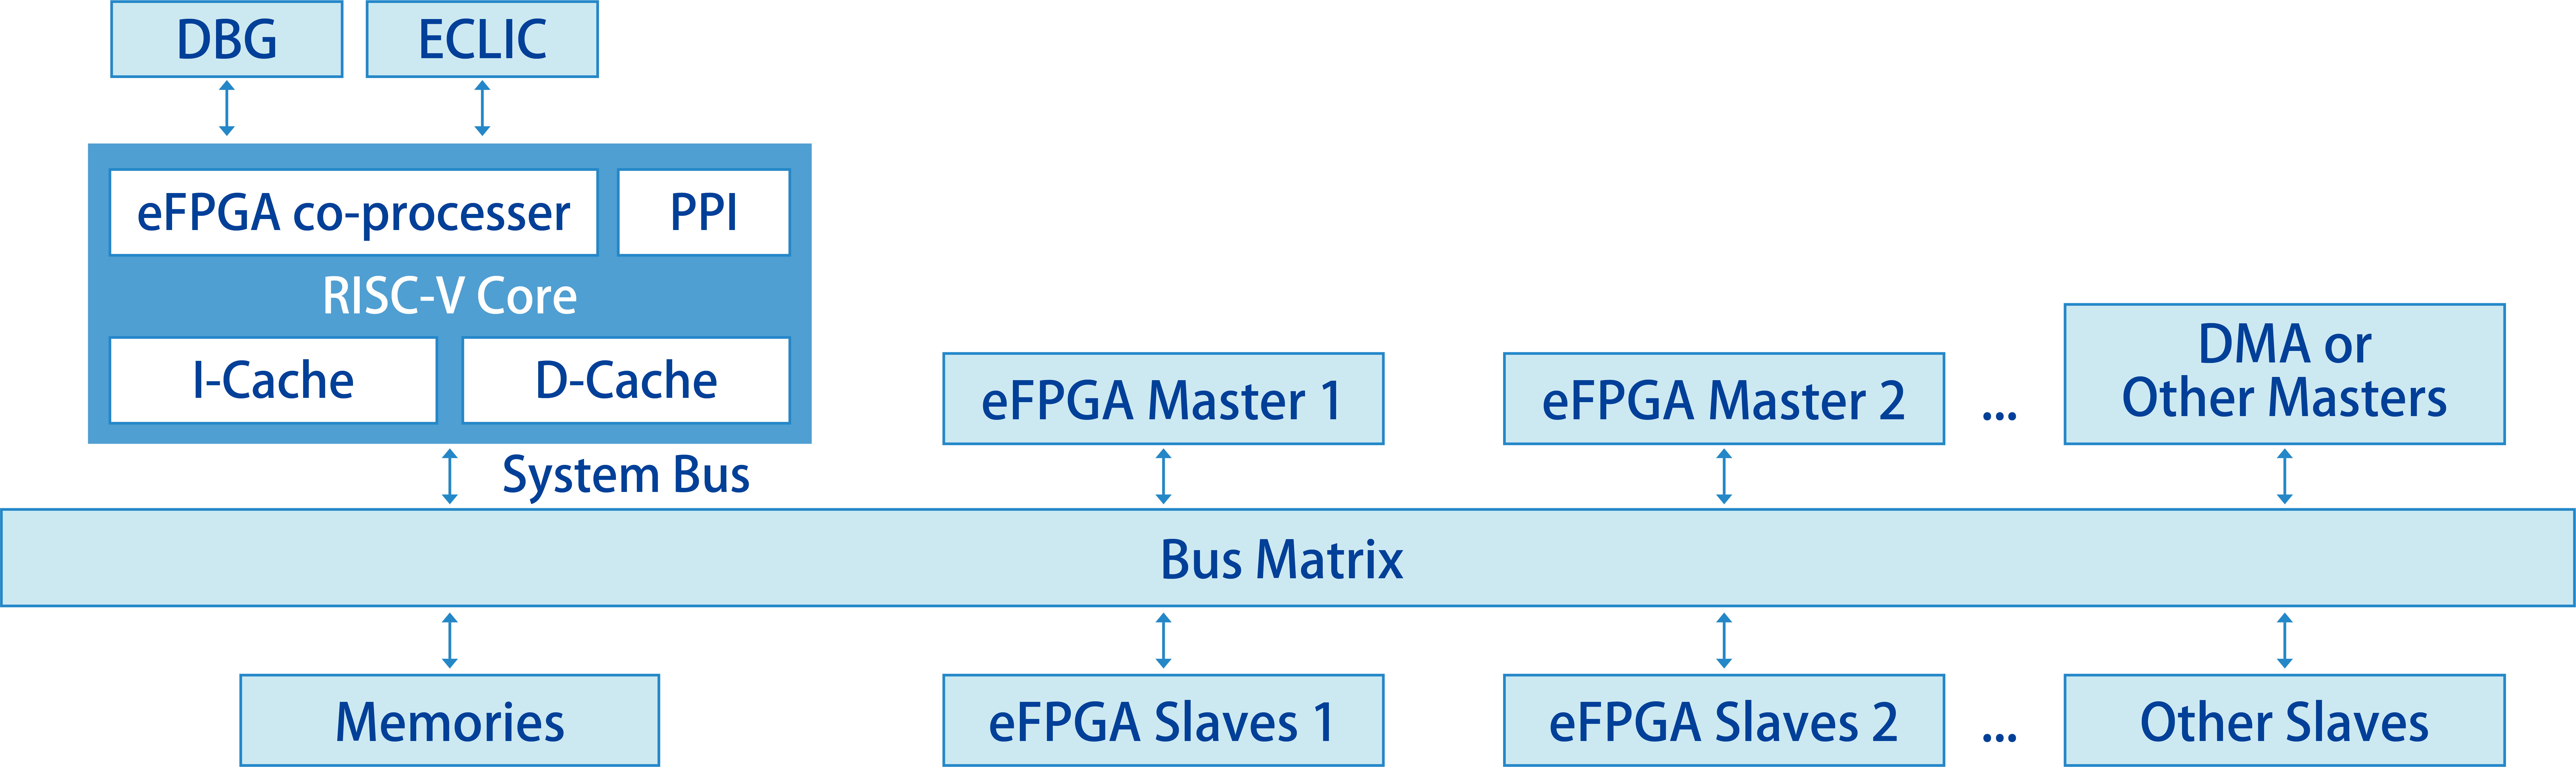 嵌入式可编程电路IP核与RISC-V结合的国产异构SoC平台.png